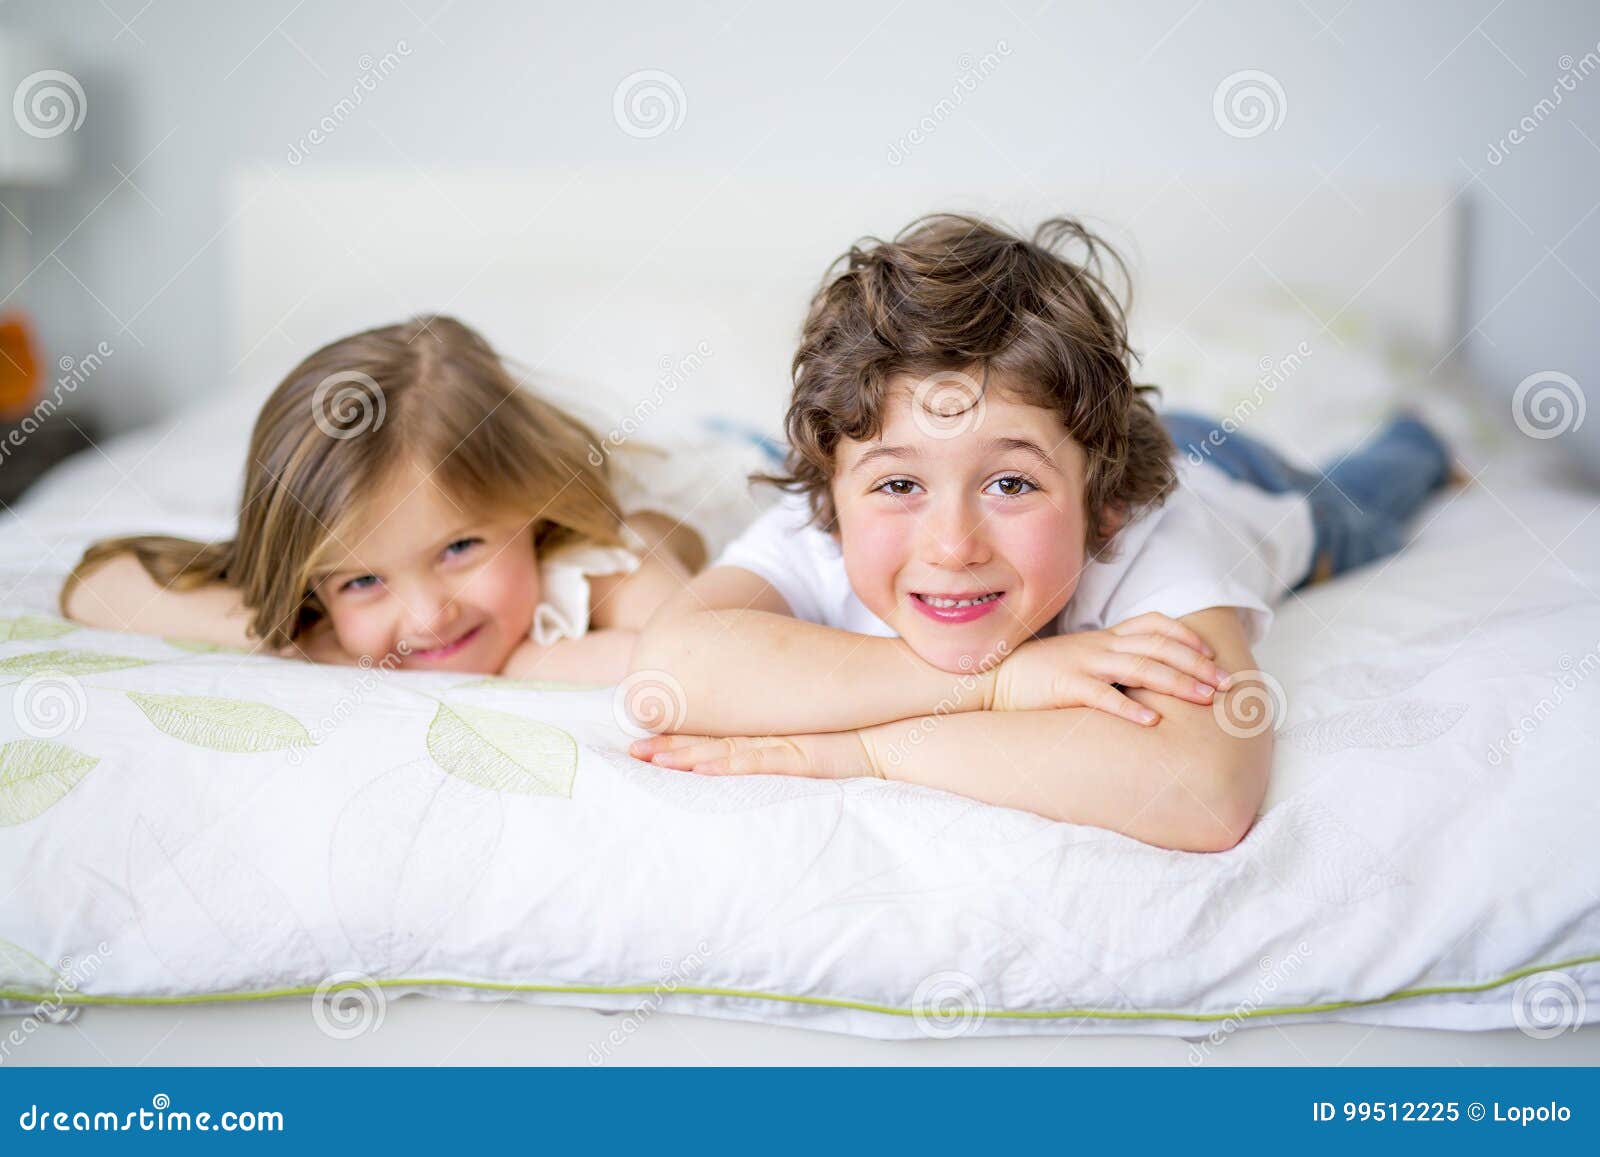 Брат пришел к сестре в постель. Брат и сестра в кровати. Брат и сестренка в постели. С младшим братом в постельке. Сестры в пижамах кровать.